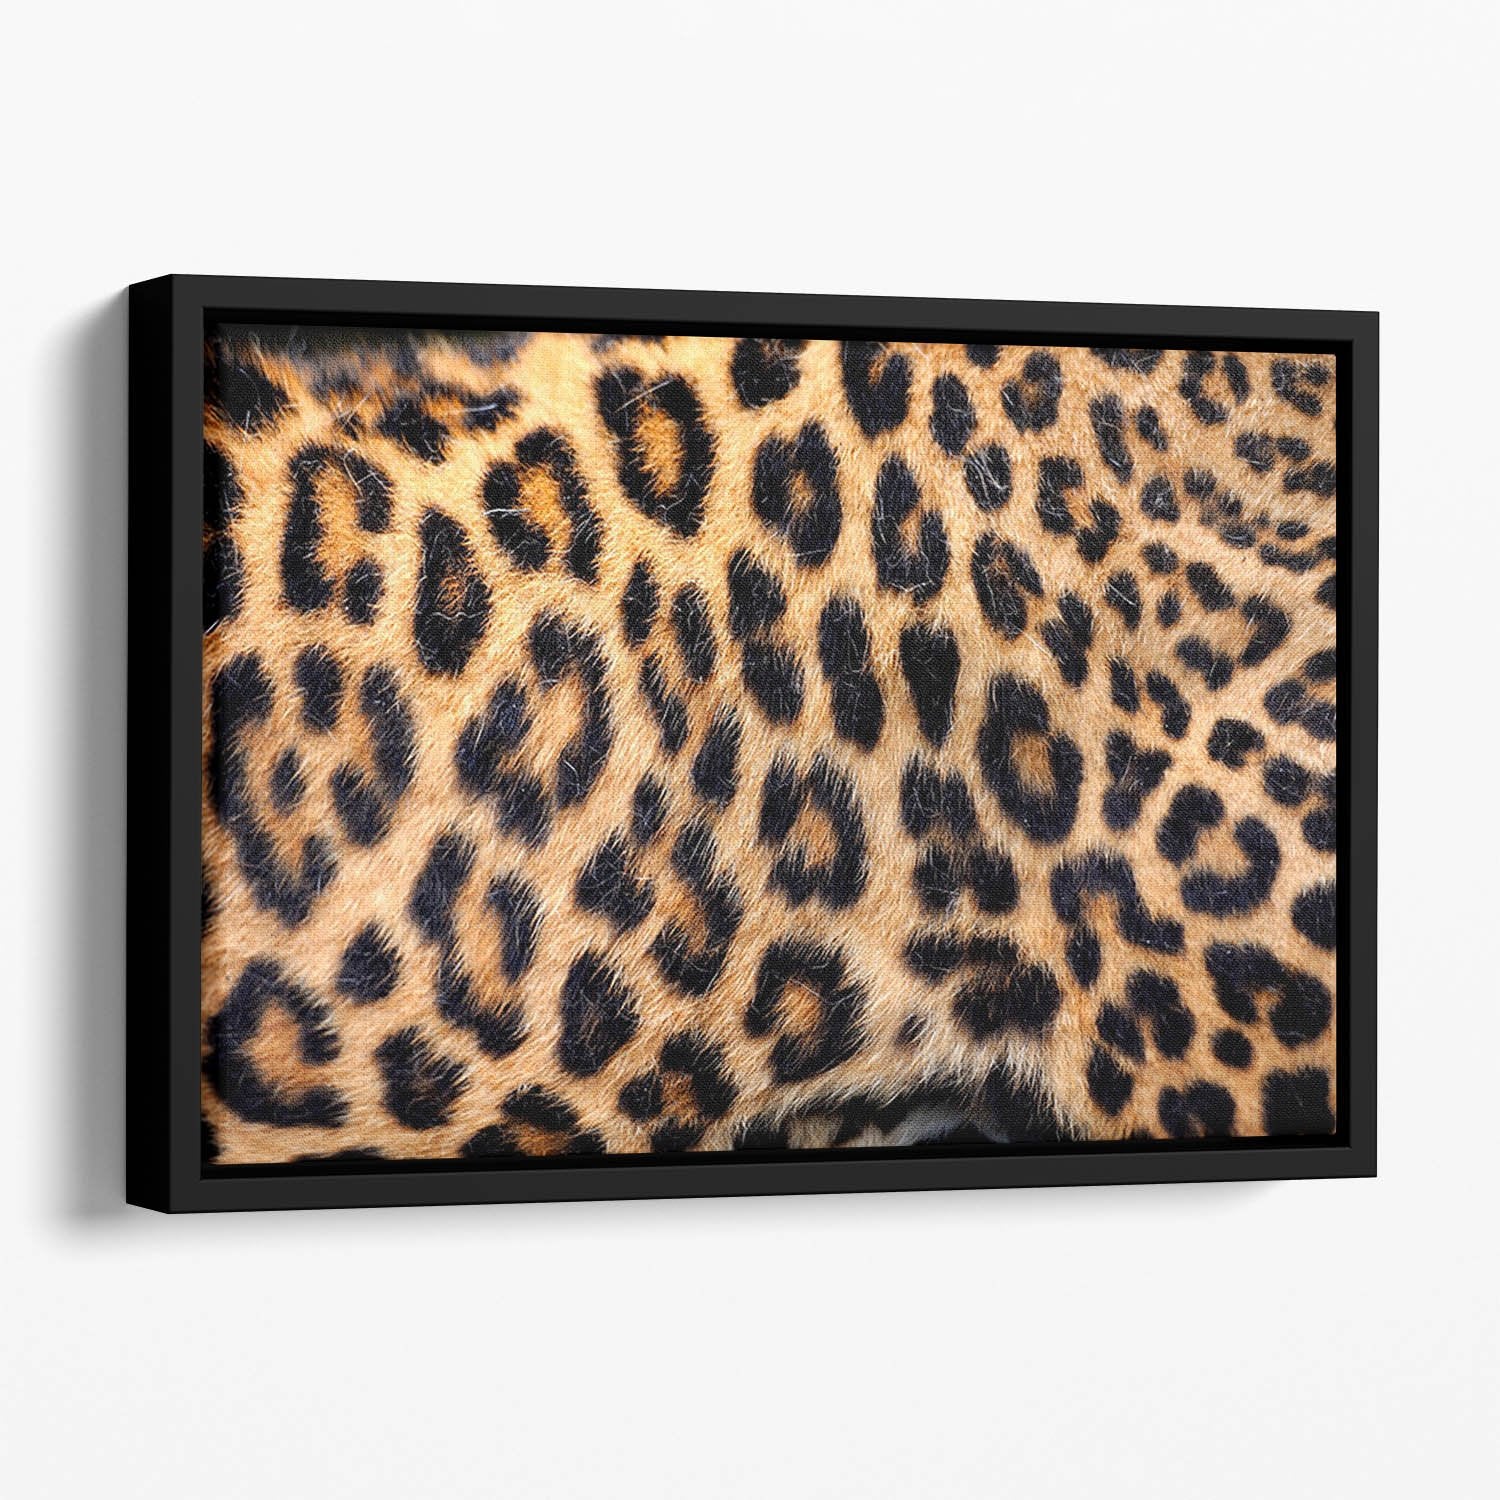 Leopard skin texture Floating Framed Canvas